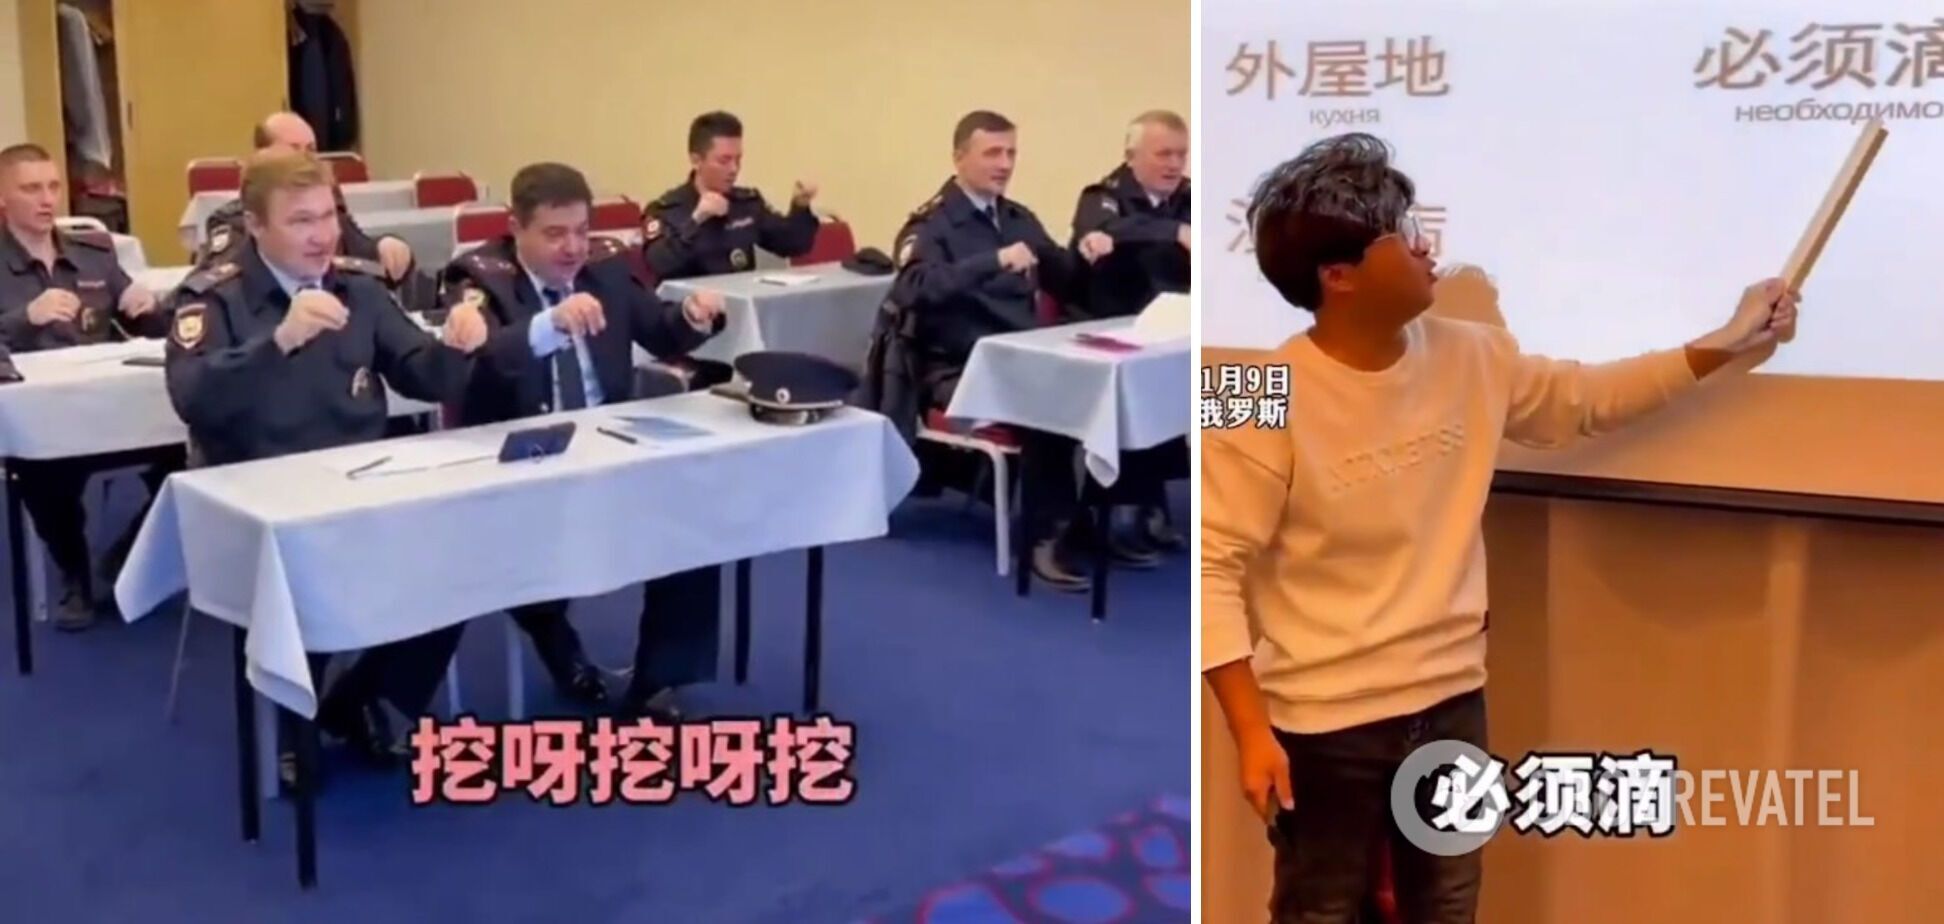 Przygotowują się do czegoś? W sieci pojawiło się nagranie, na którym rosyjska policja uczy się śpiewać po chińsku